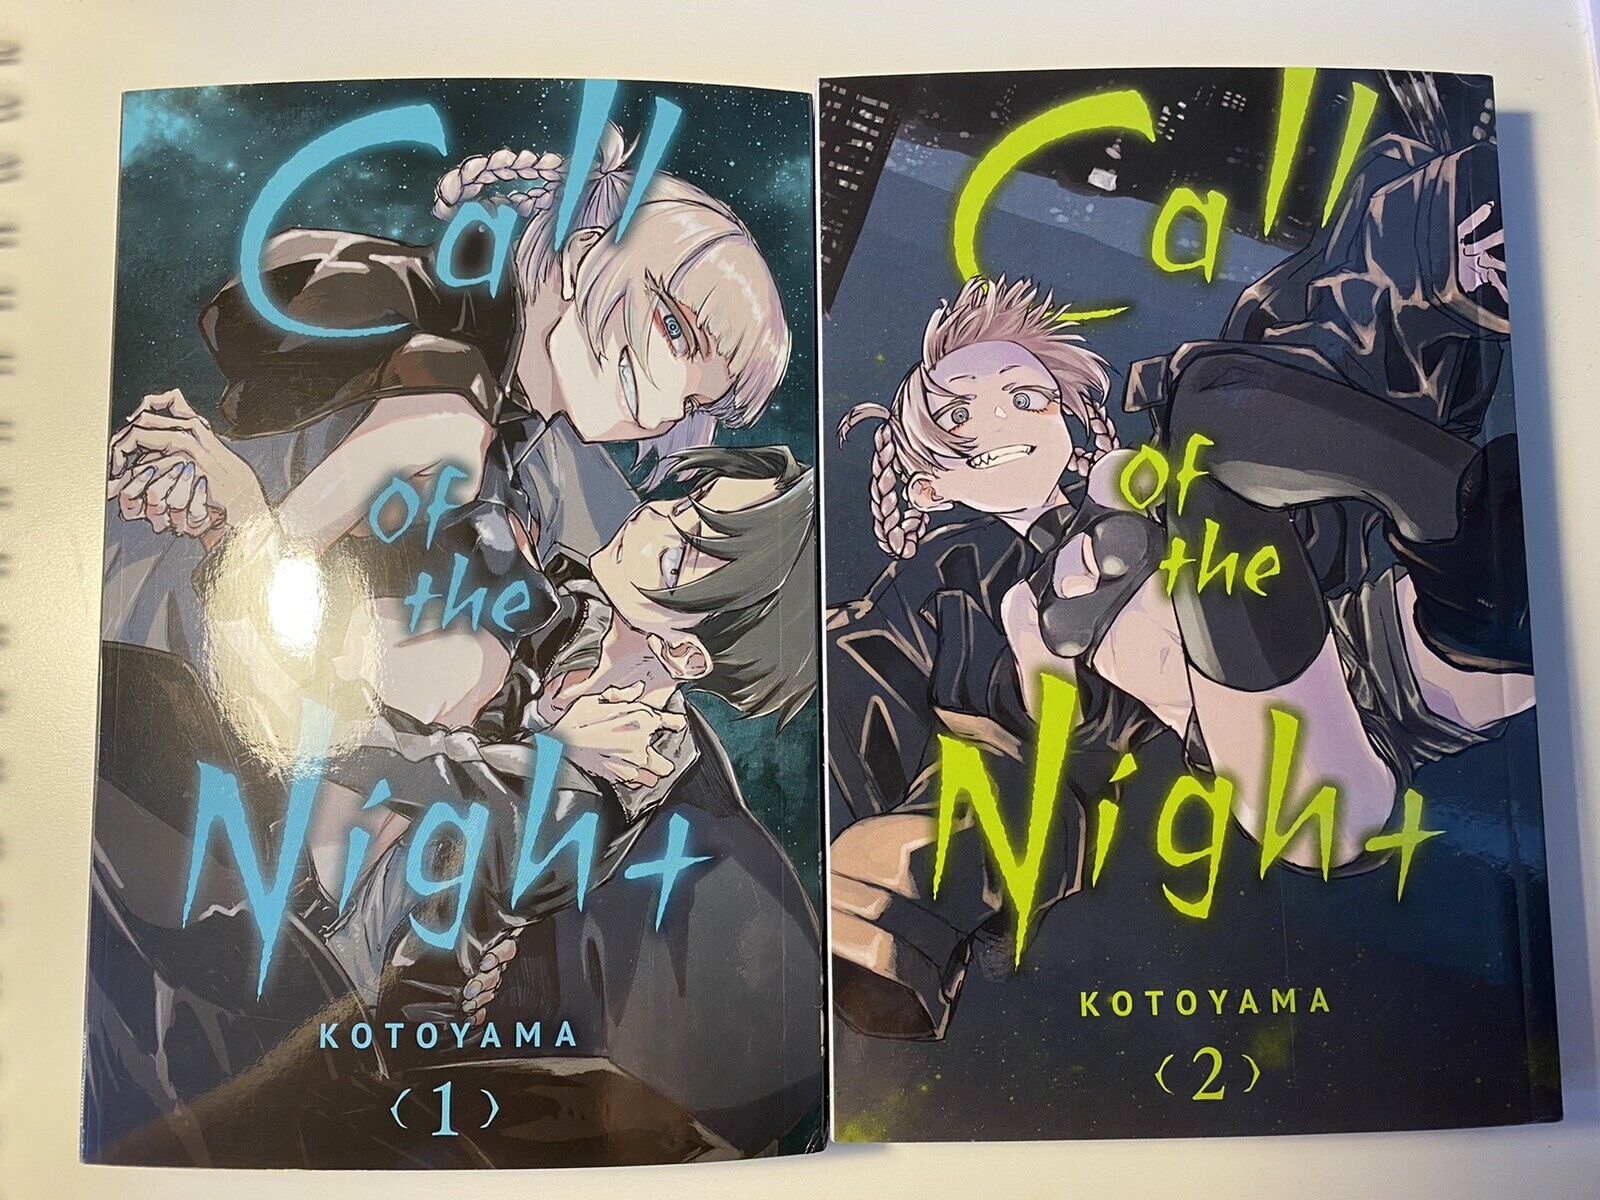 call of the night manga - volumes 1 & 2